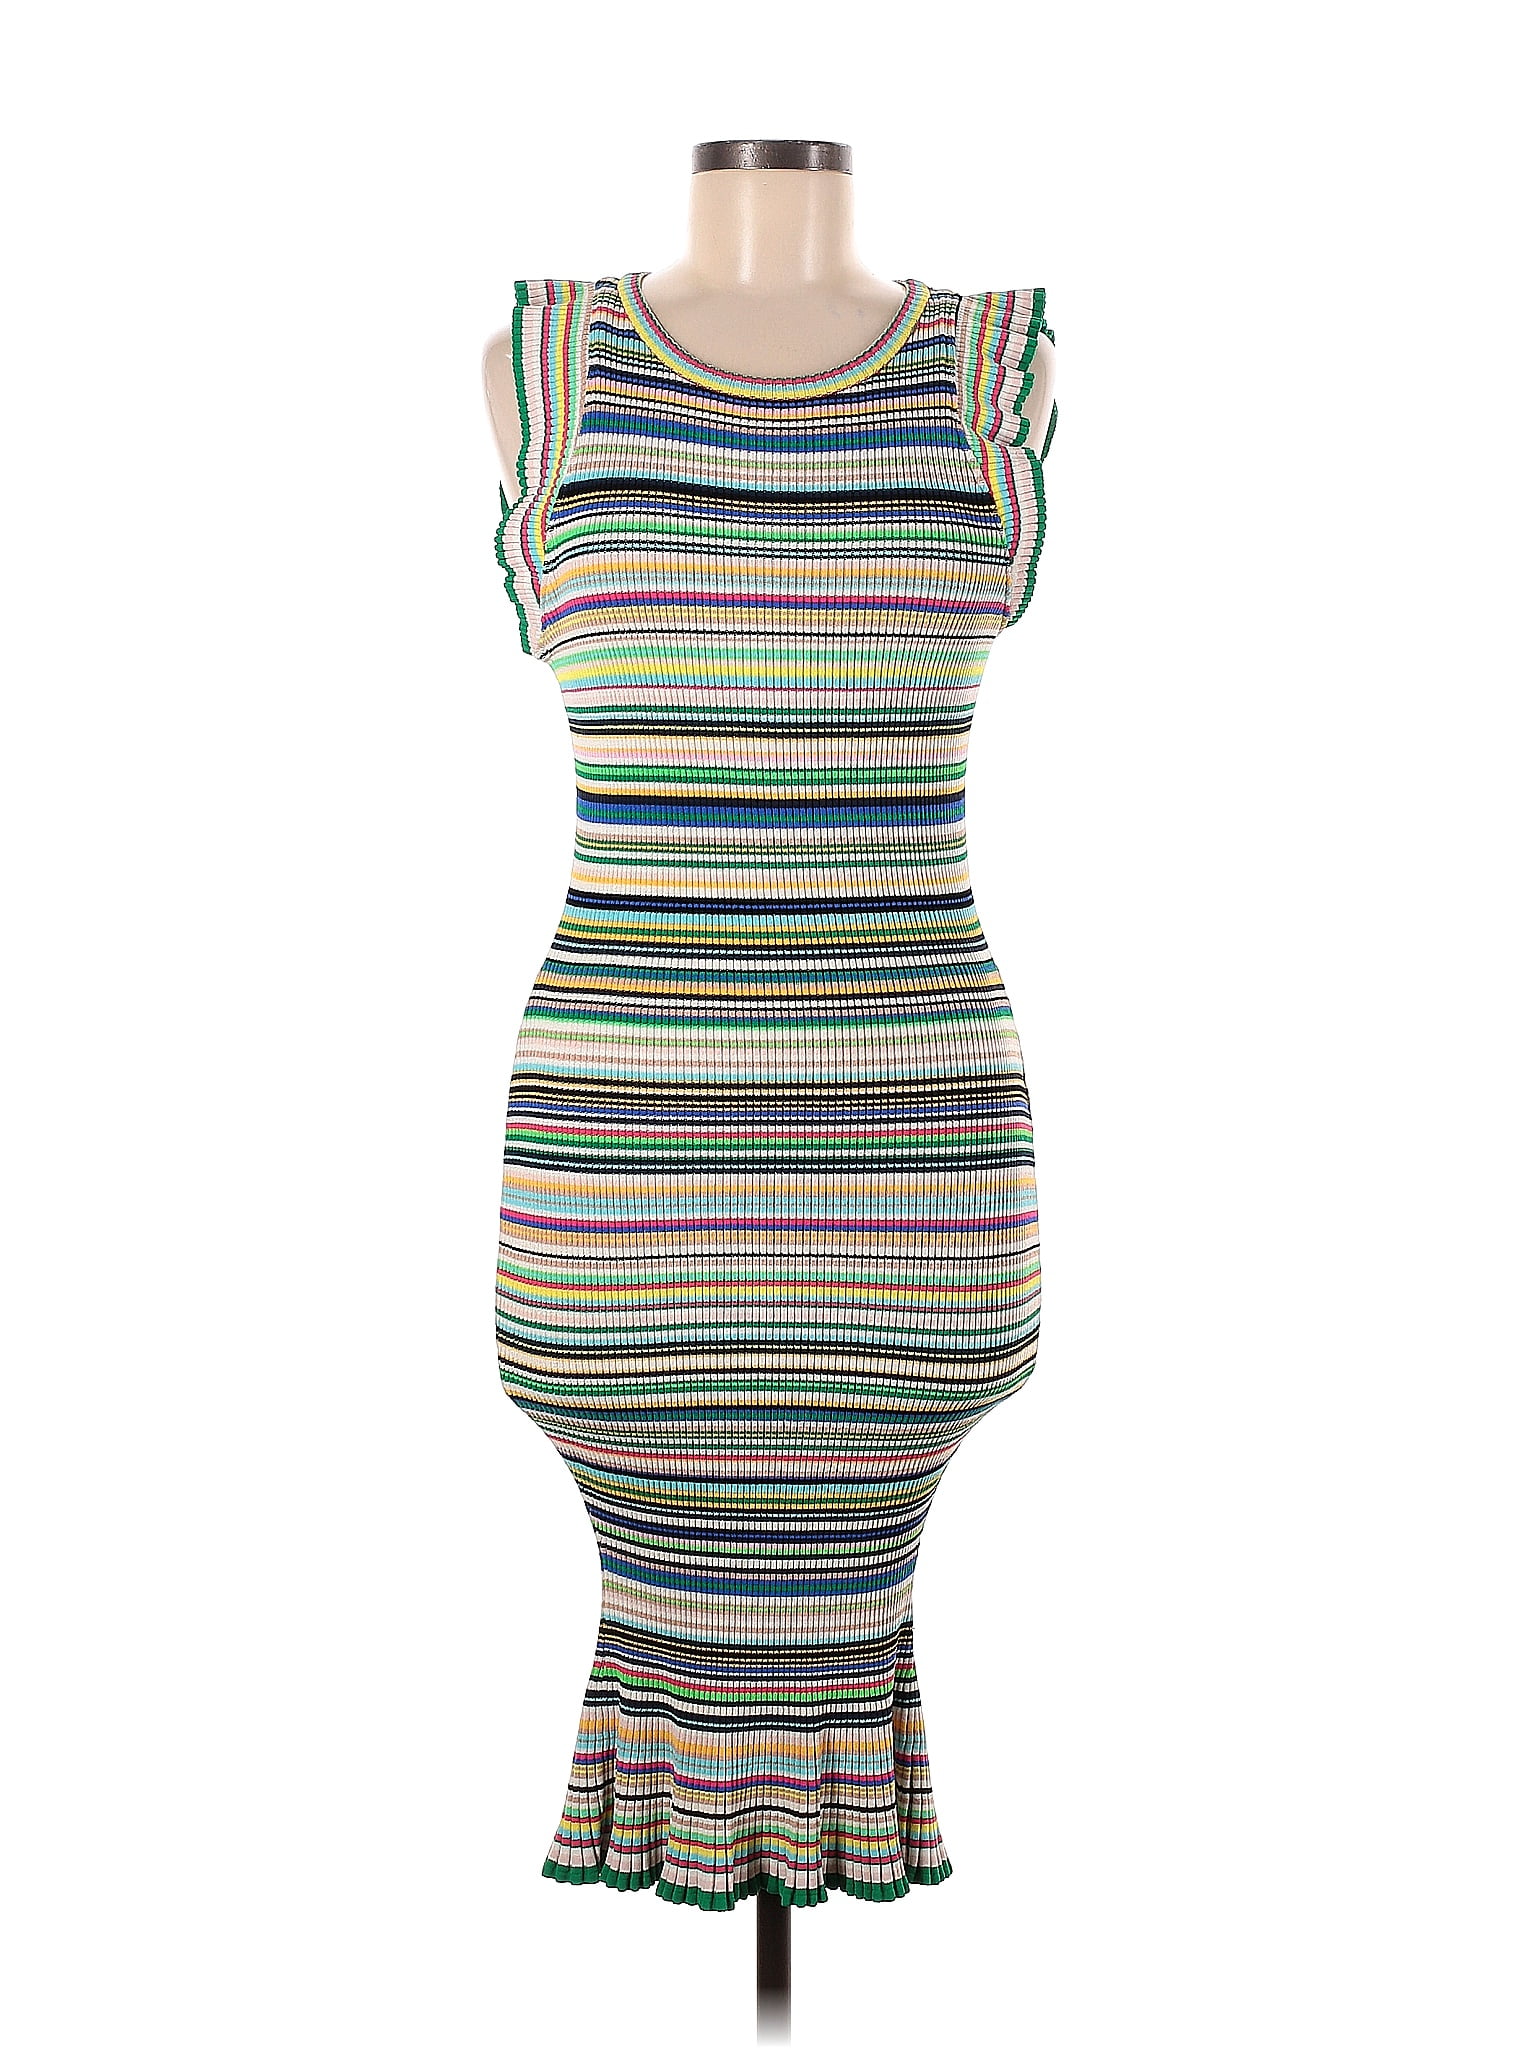 Trina Turk - Multi-Striped Knit Short Sleeved Flared Dress Sz M